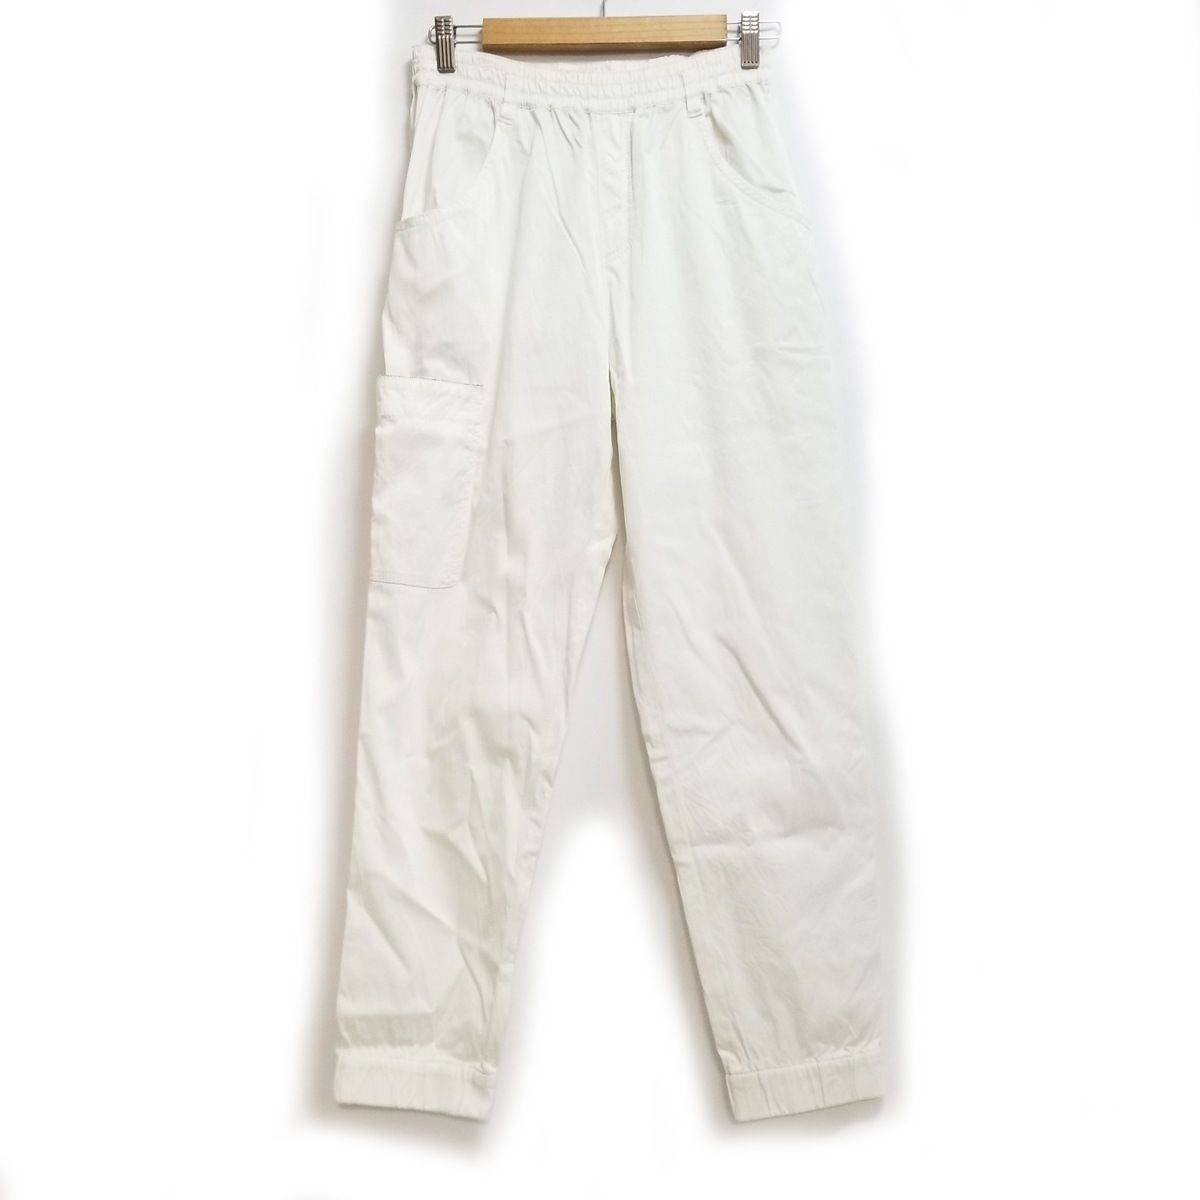 MORABITO(モラビト) パンツ サイズ38 M レディース美品 - 白 フル ...